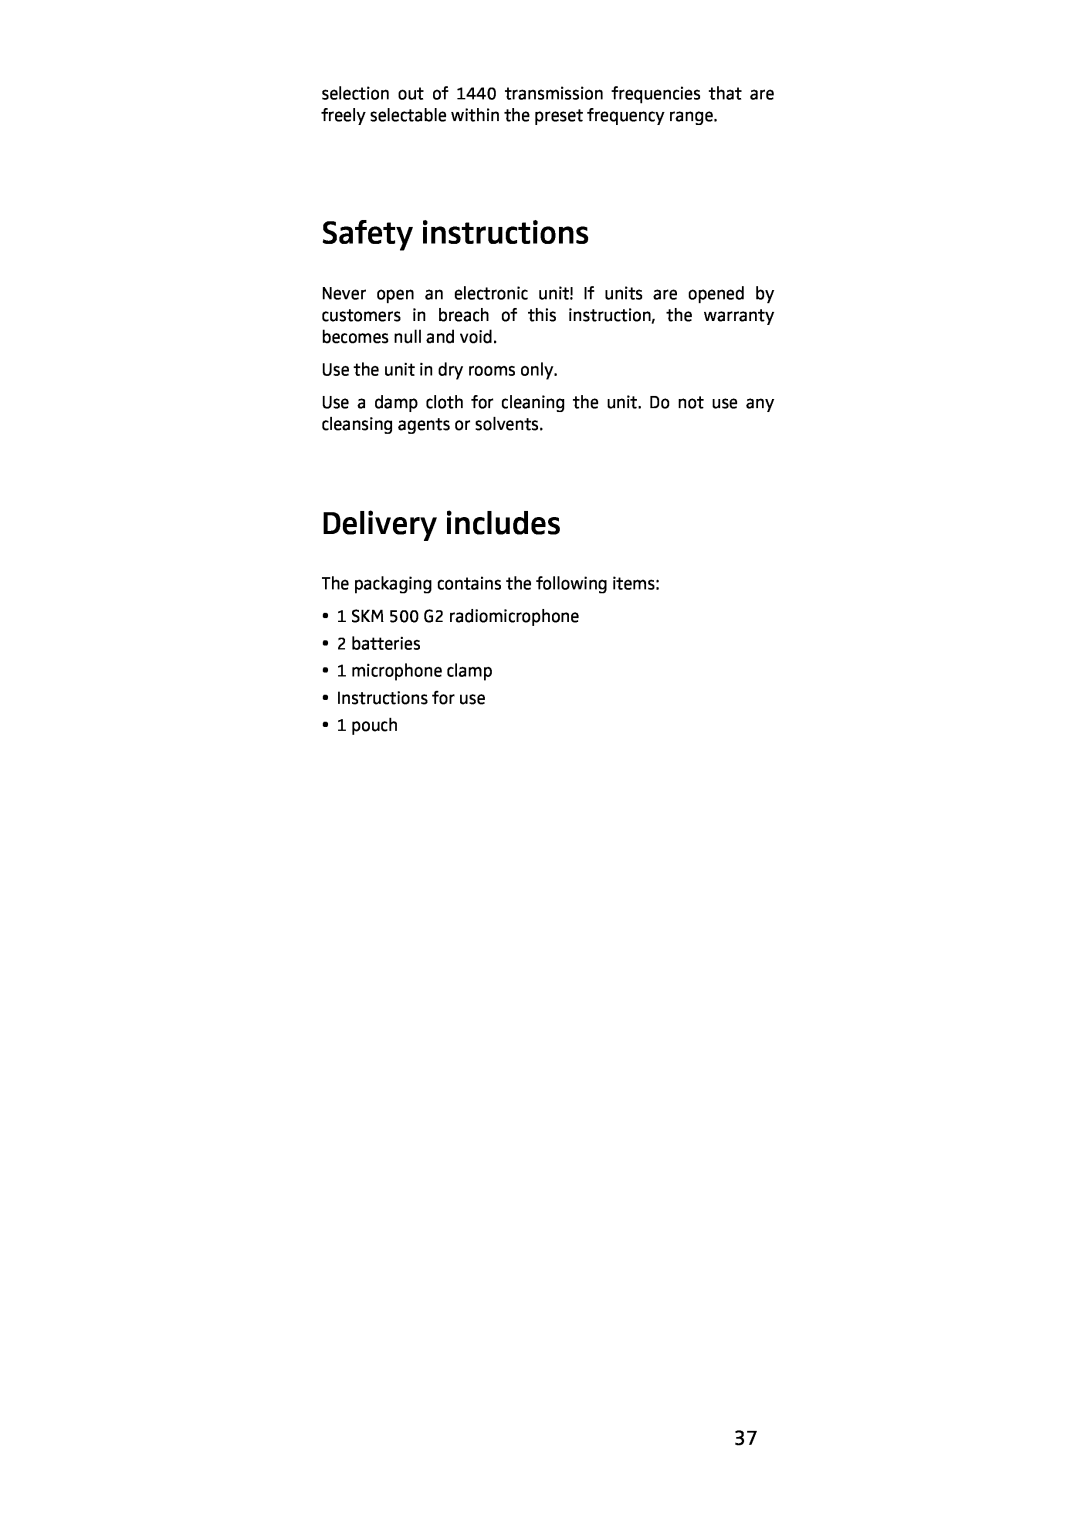 Sennheiser EK 500, SKM 500 manual Safety instructions, Delivery includes 